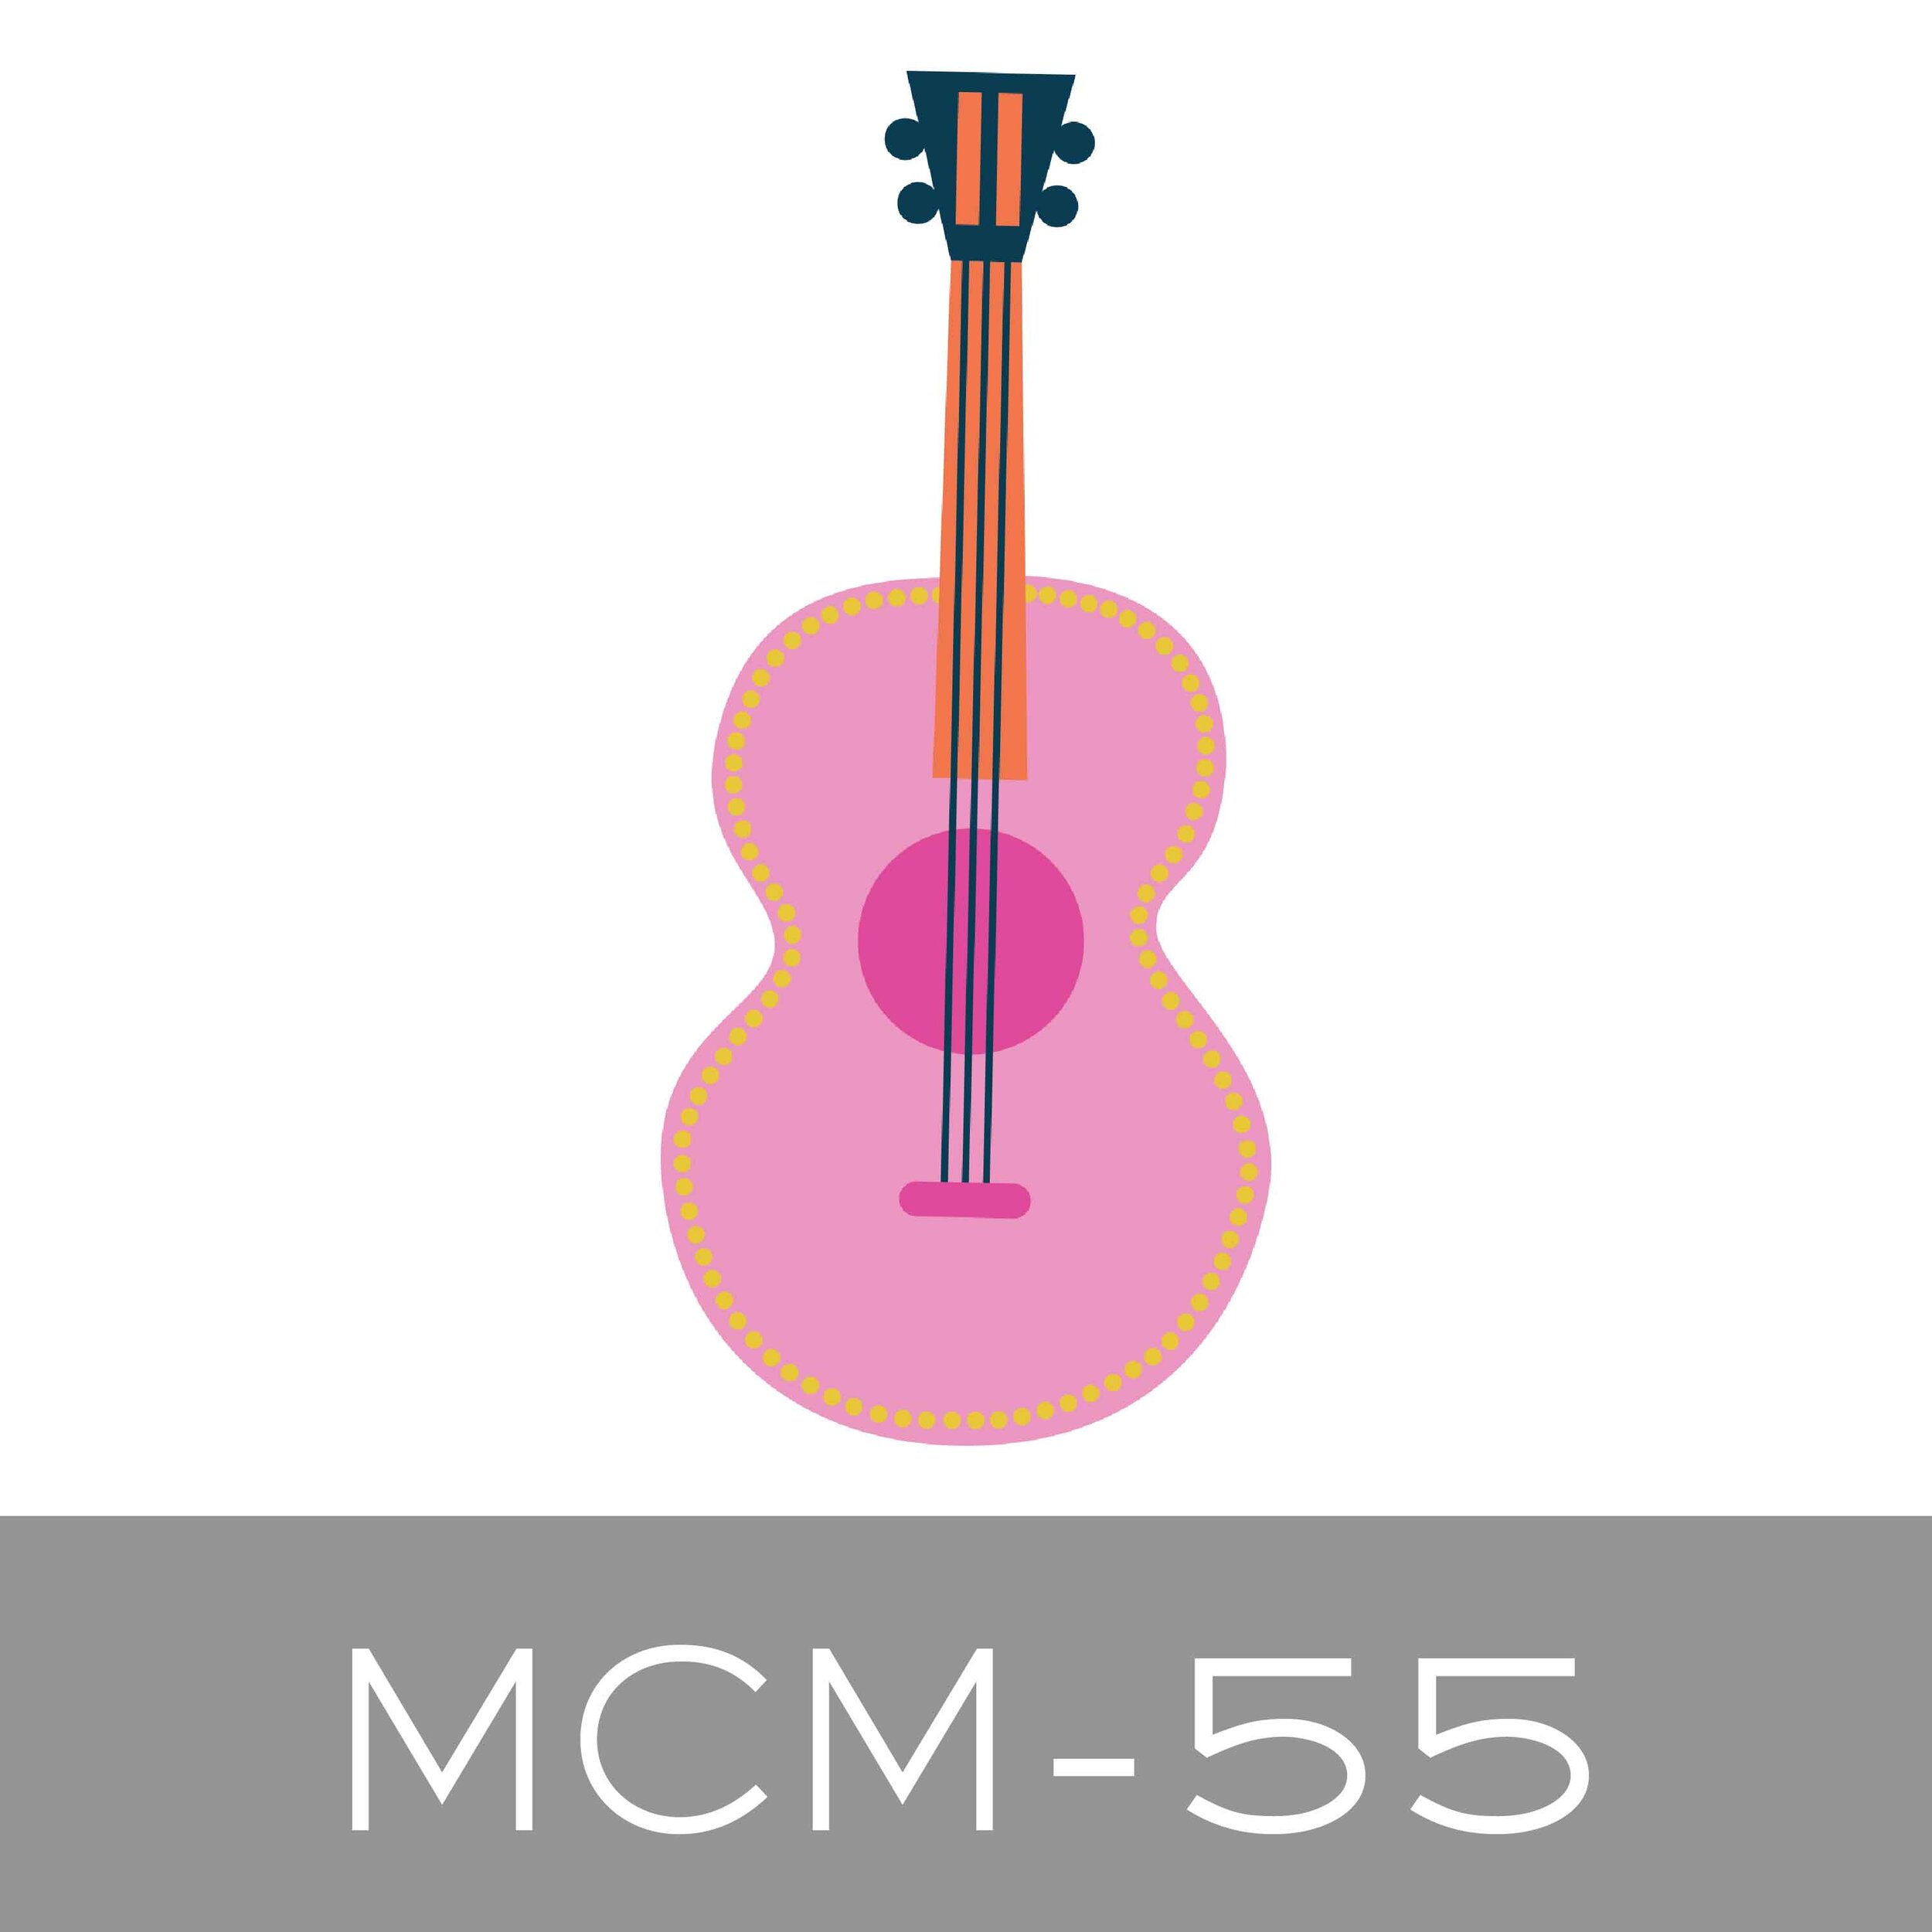 MCM-55.jpg